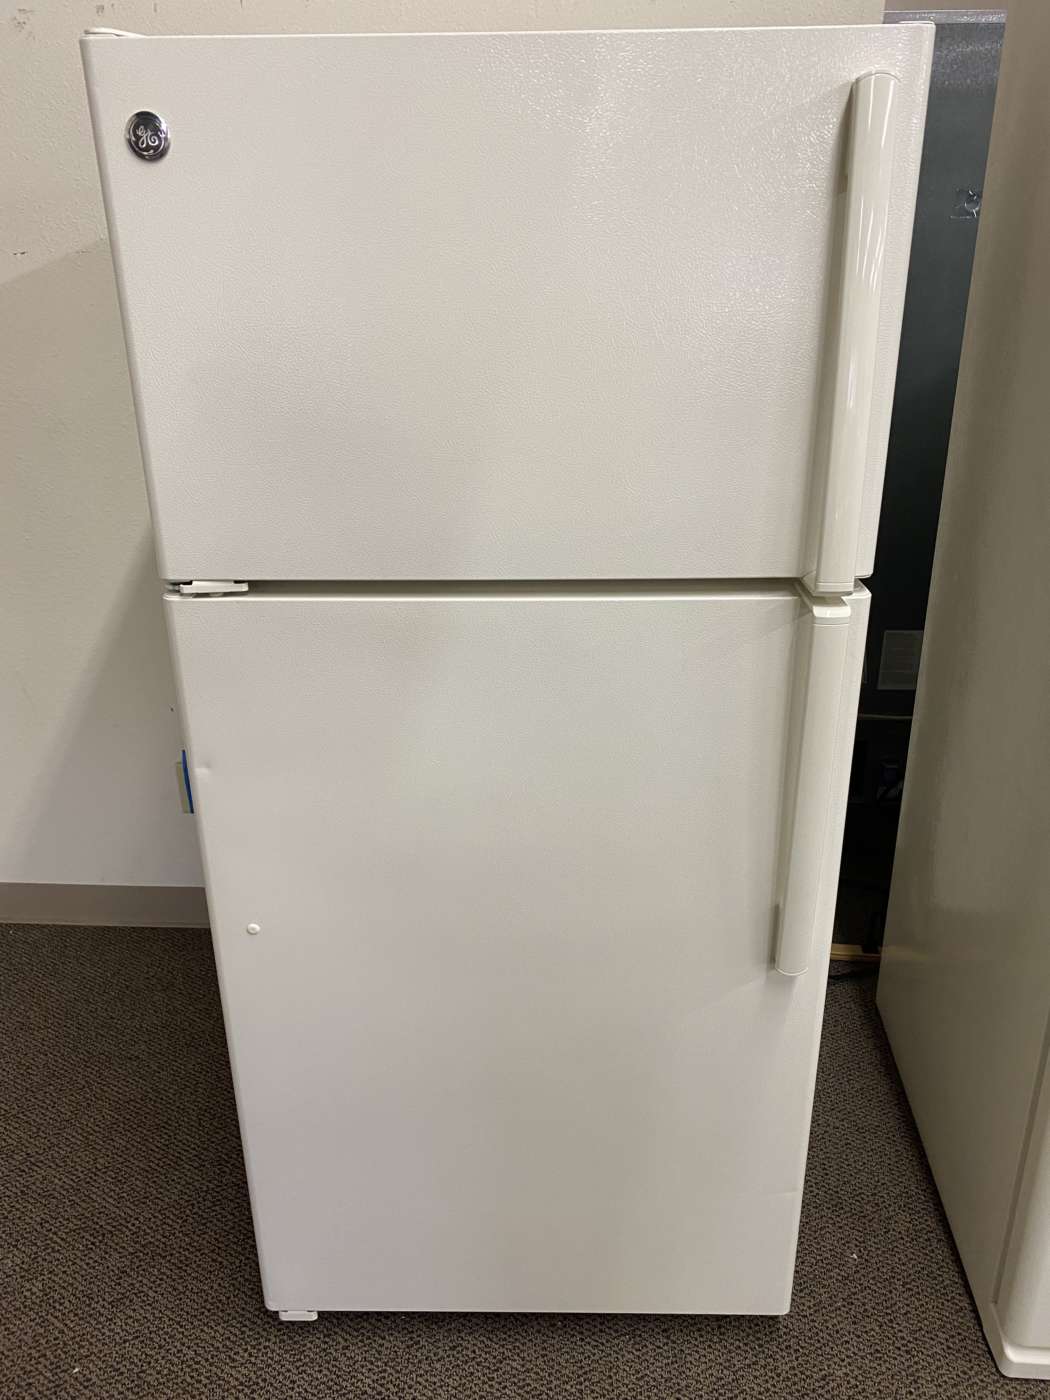 Reconditioned G/E 15 Cu. Ft. Top-Freezer Refrigerator – Bisque